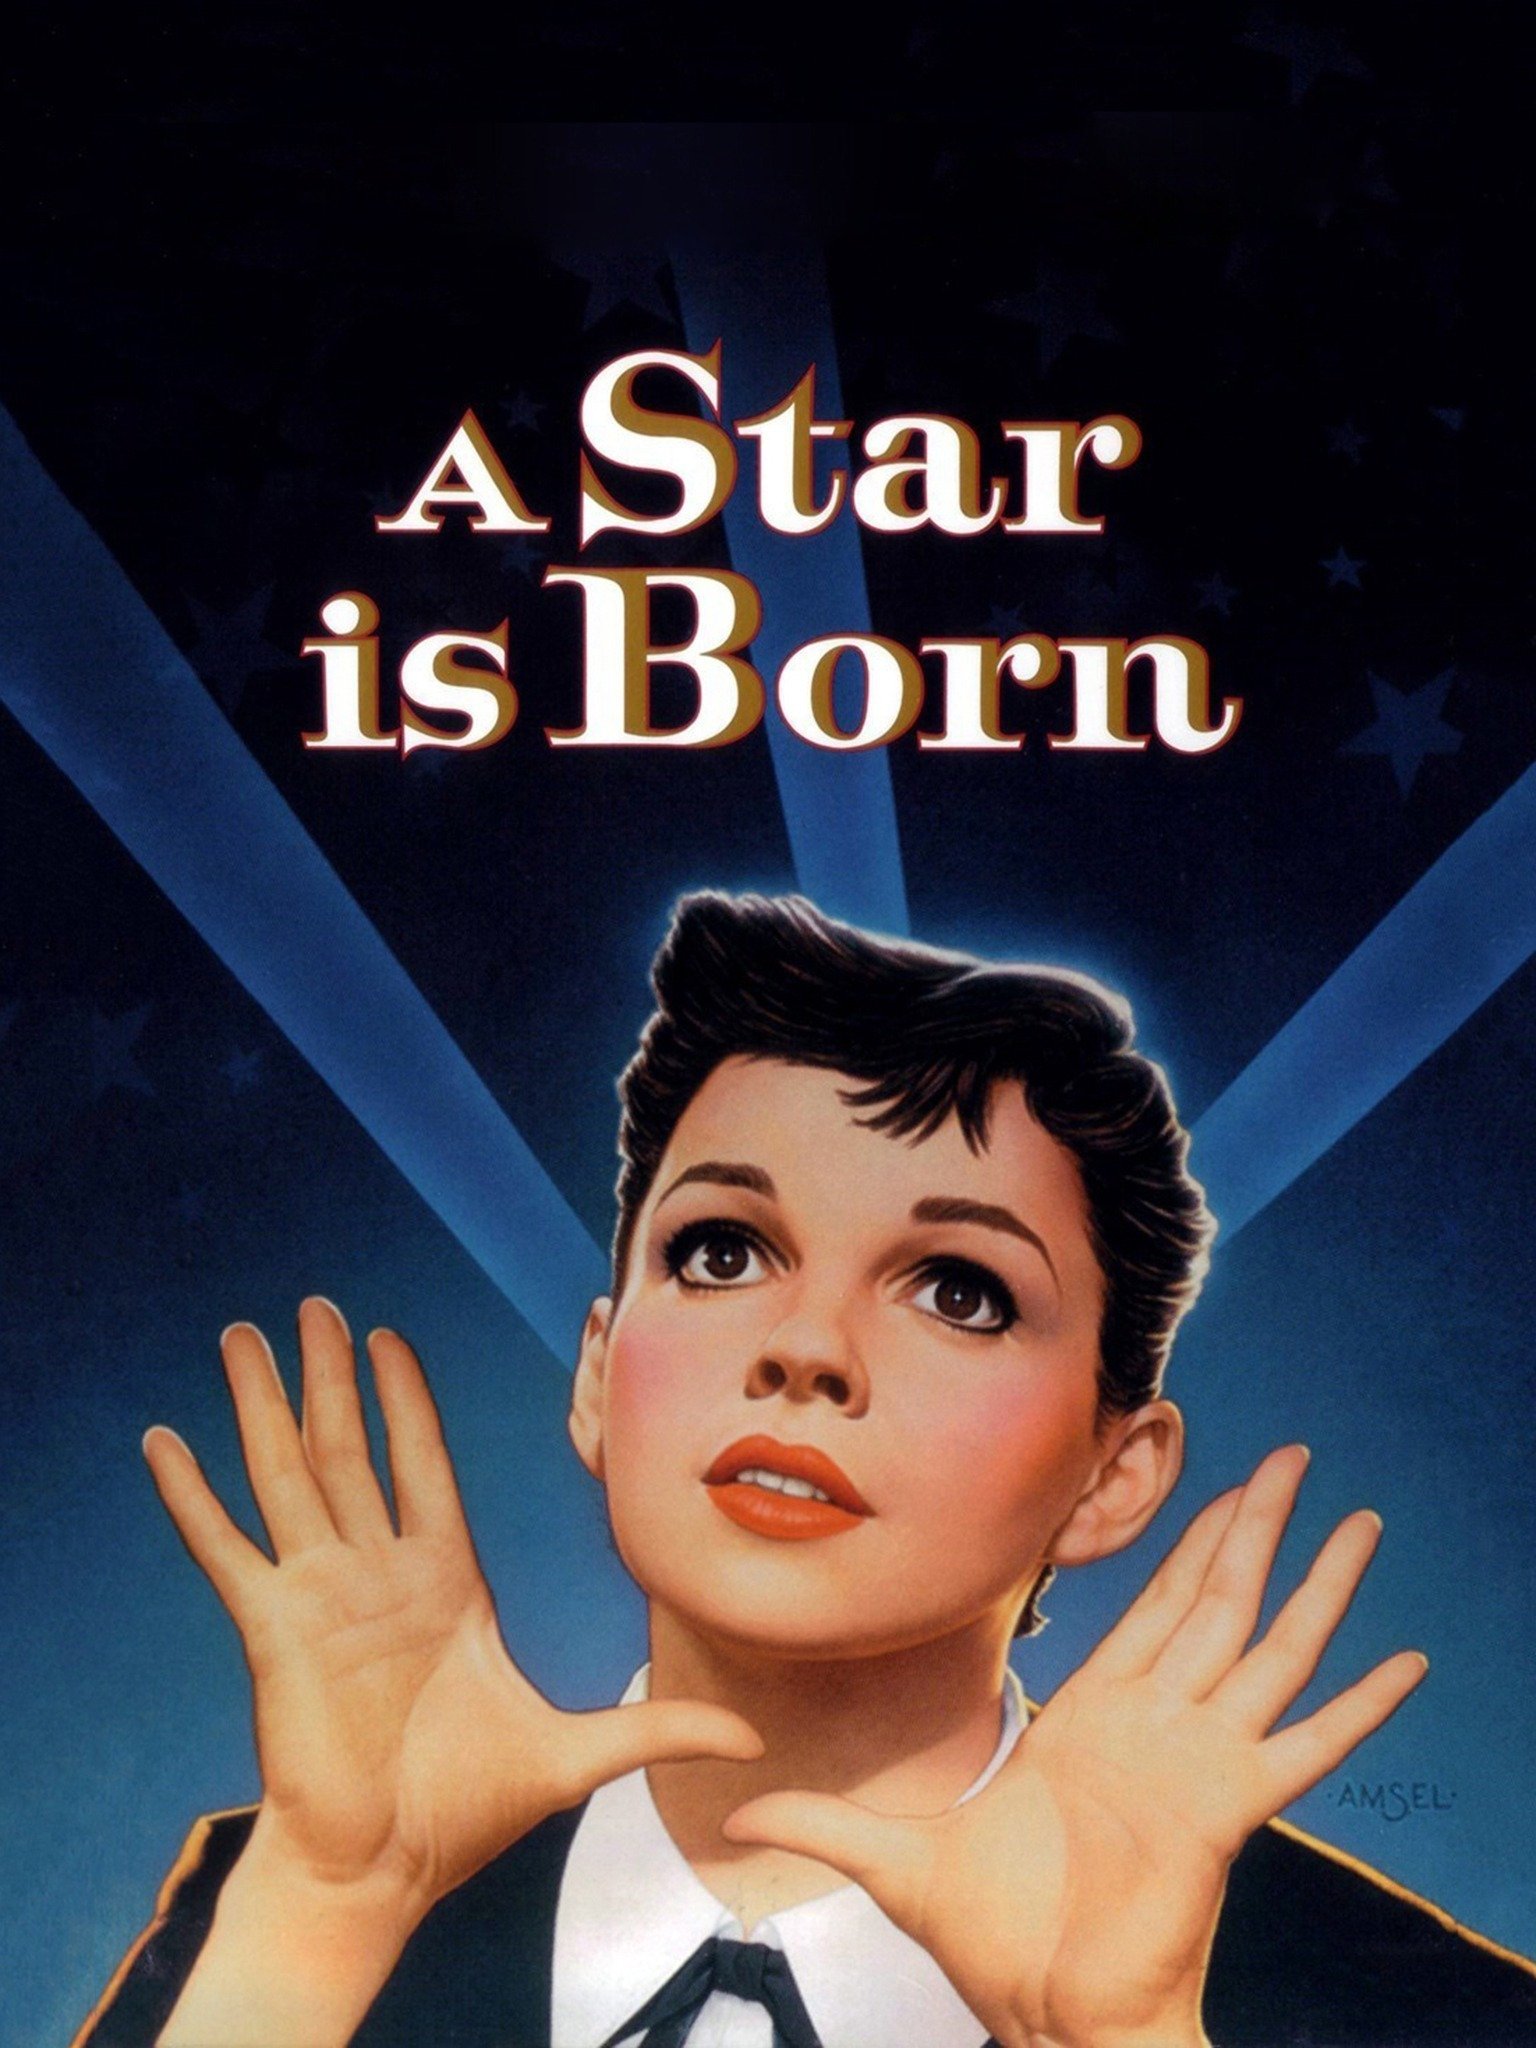 スタア誕生 1954 A Star Is Born ミュージカルは終わらない Musicals Won T Be Over